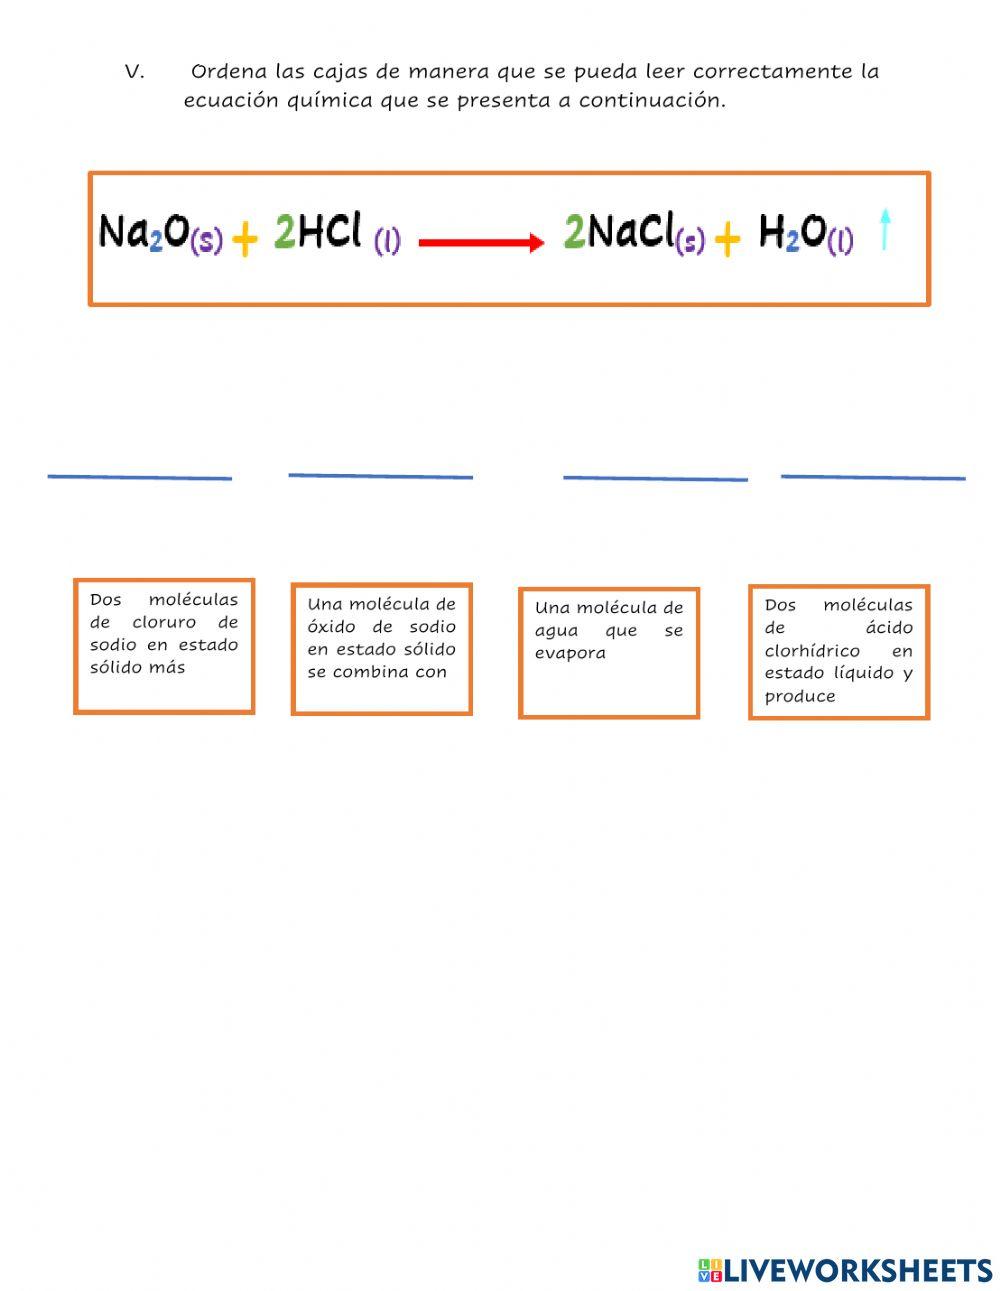 Los elementos de una ecuación química